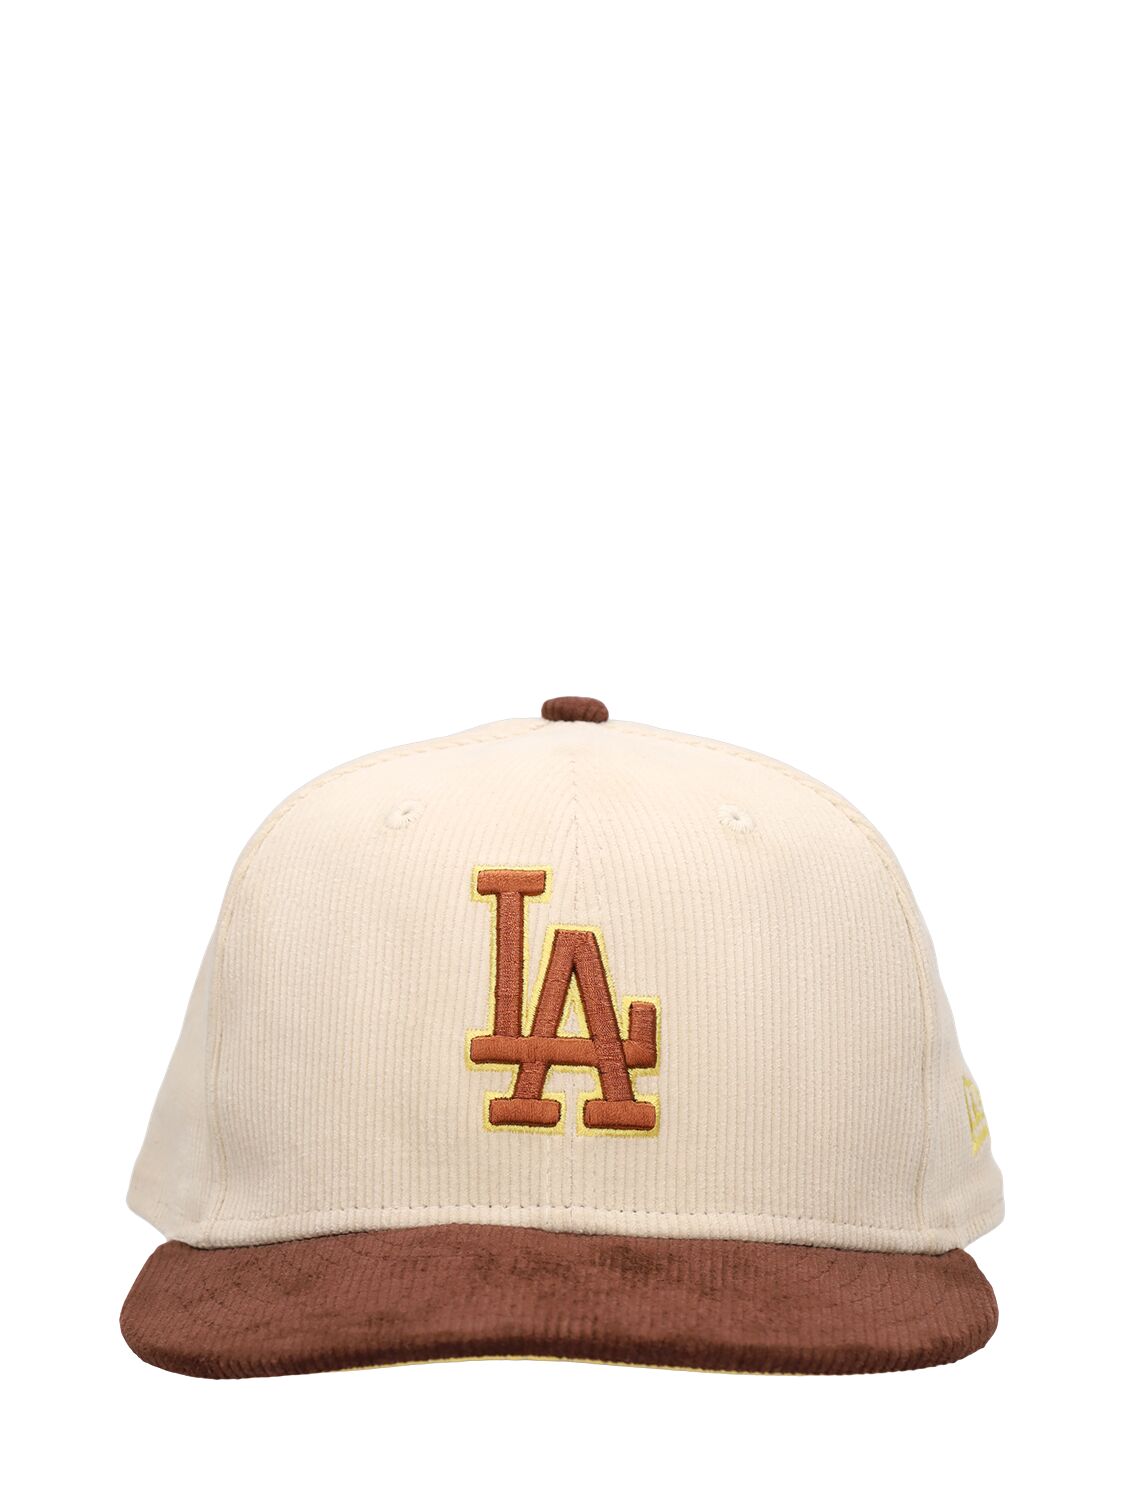 New Era La Dodgers 59fifty Cap In Beige,brown